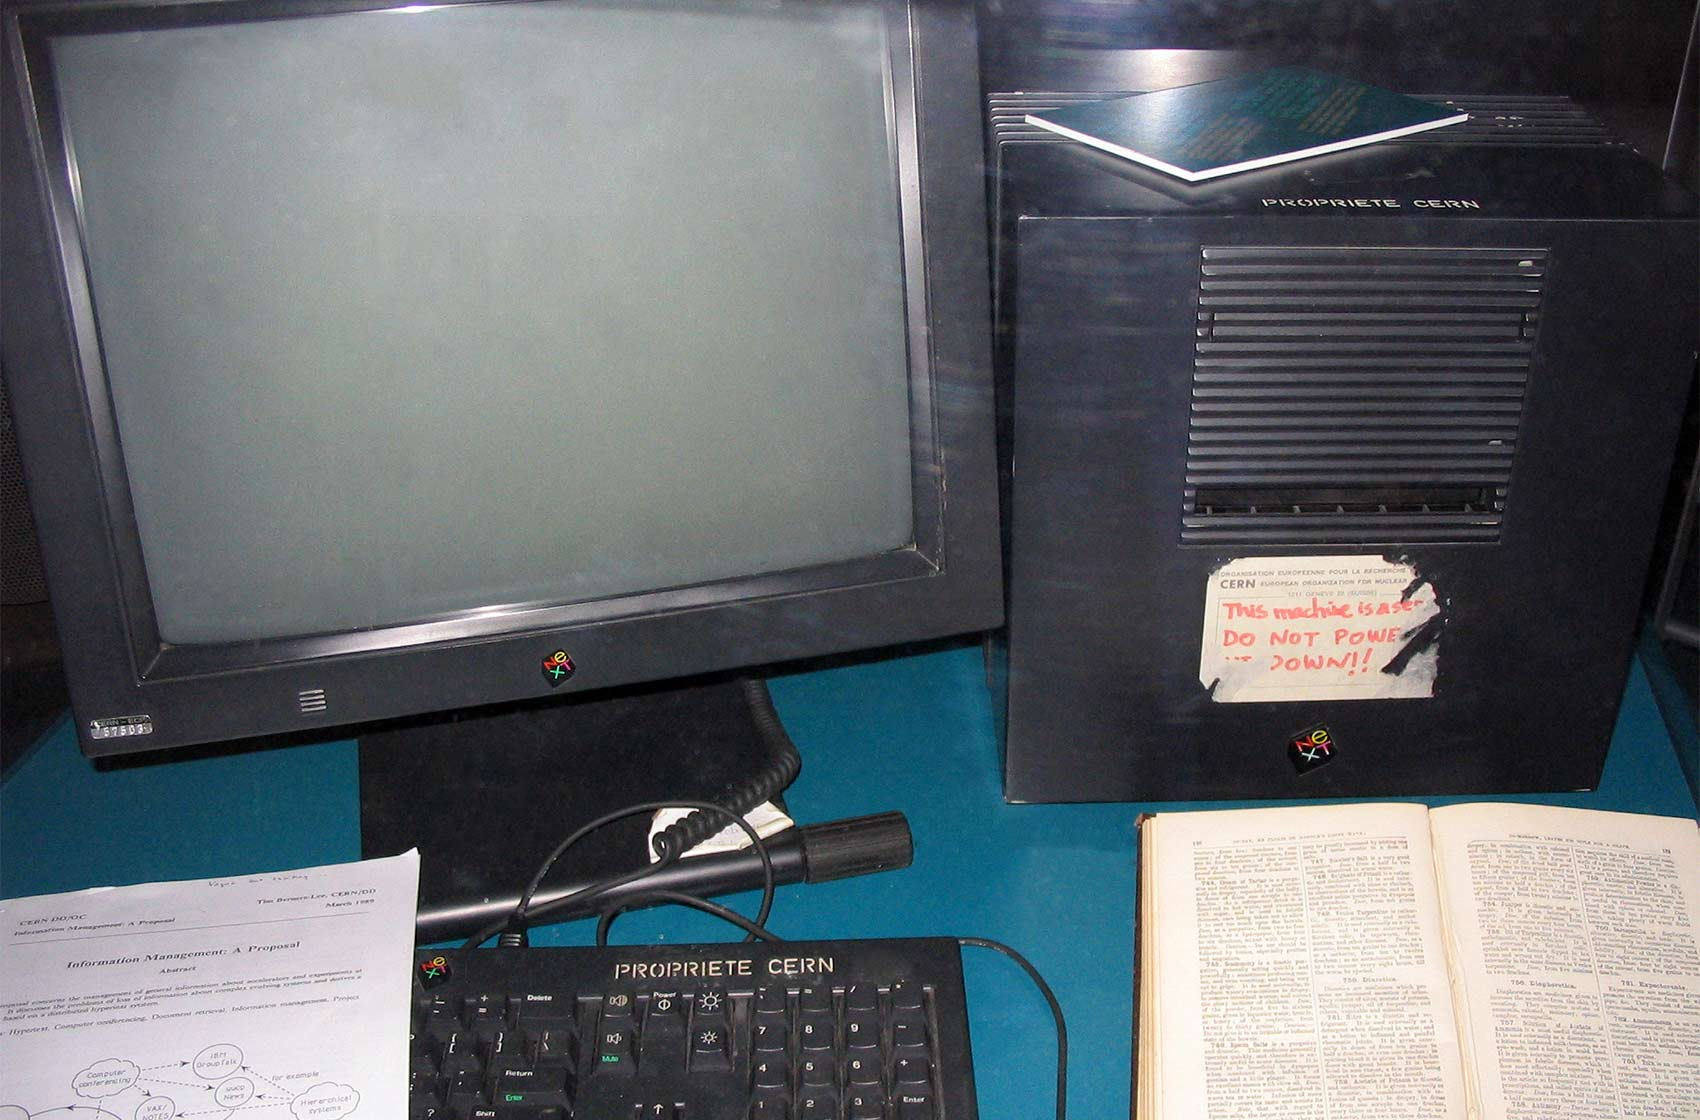 Le premier serveur web, actuellement au musée du CERN, étiqueté « This machine is a server. DO NOT POWER IT DOWN!! », ce qui signifie : « Cette machine est un serveur. NE PAS L'ÉTEINDRE !! »
Coolcaesar at the English language Wikipedia [CC BY-SA 3.0 (http://creativecommons.org/licenses/by-sa/3.0/)]